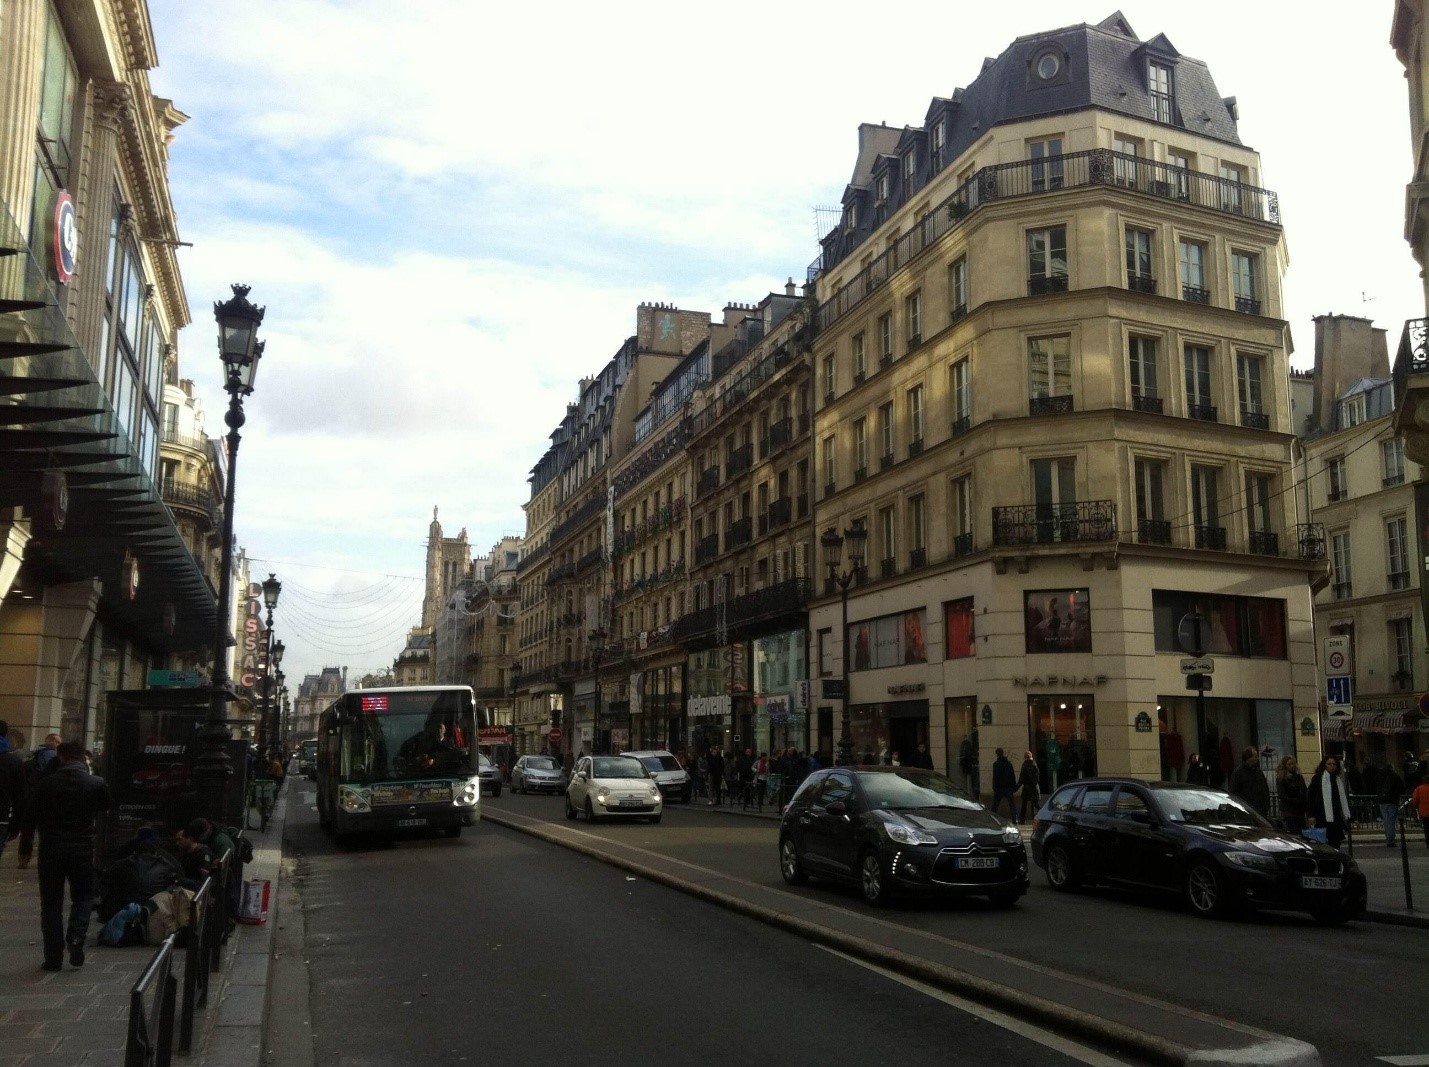 خیابان ریوولی پاریس